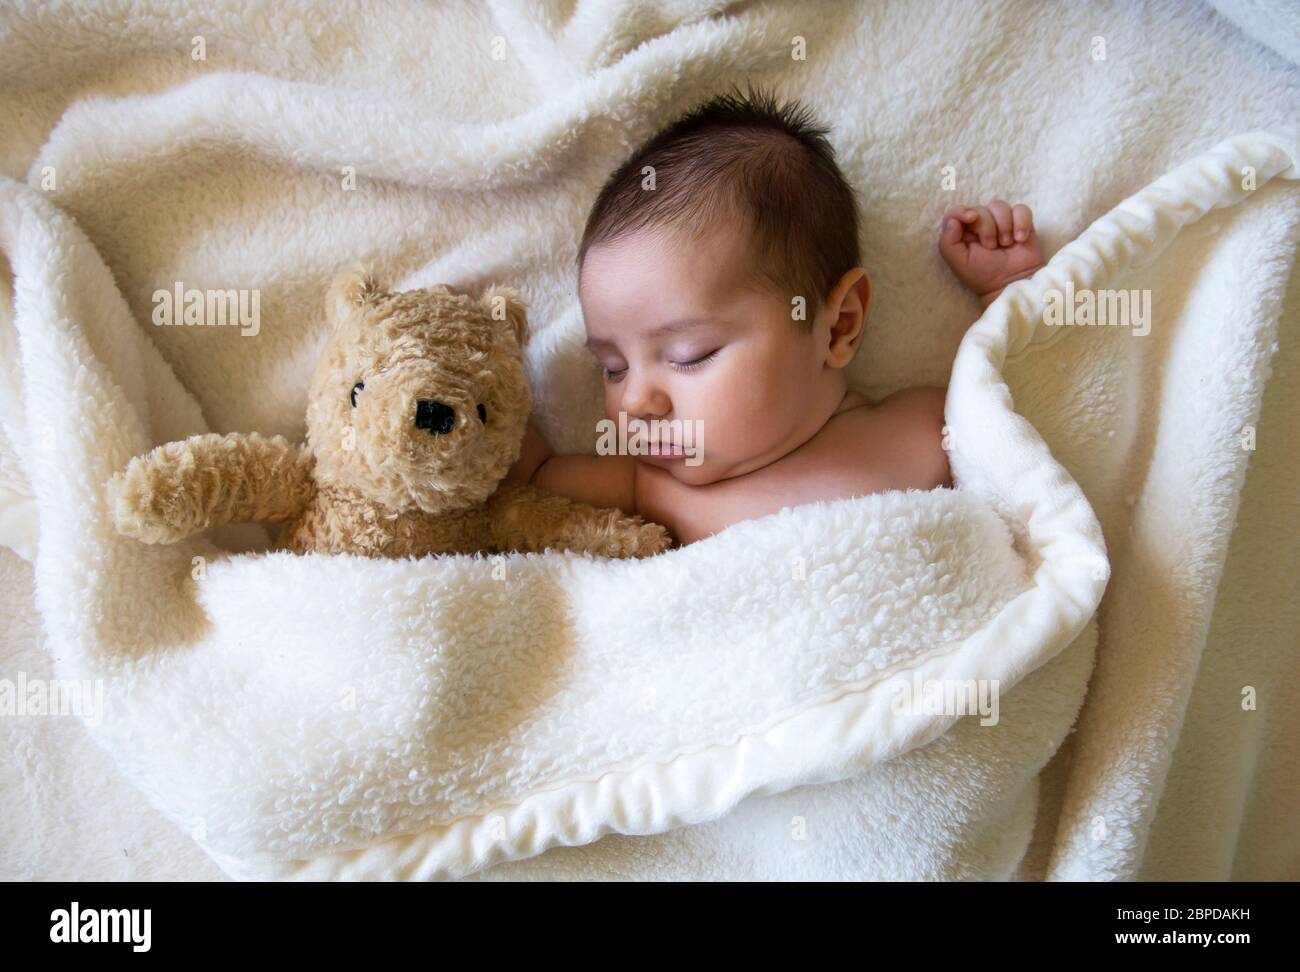 Recién nacido bebé niño durmiendo con oso de peluche Foto de stock